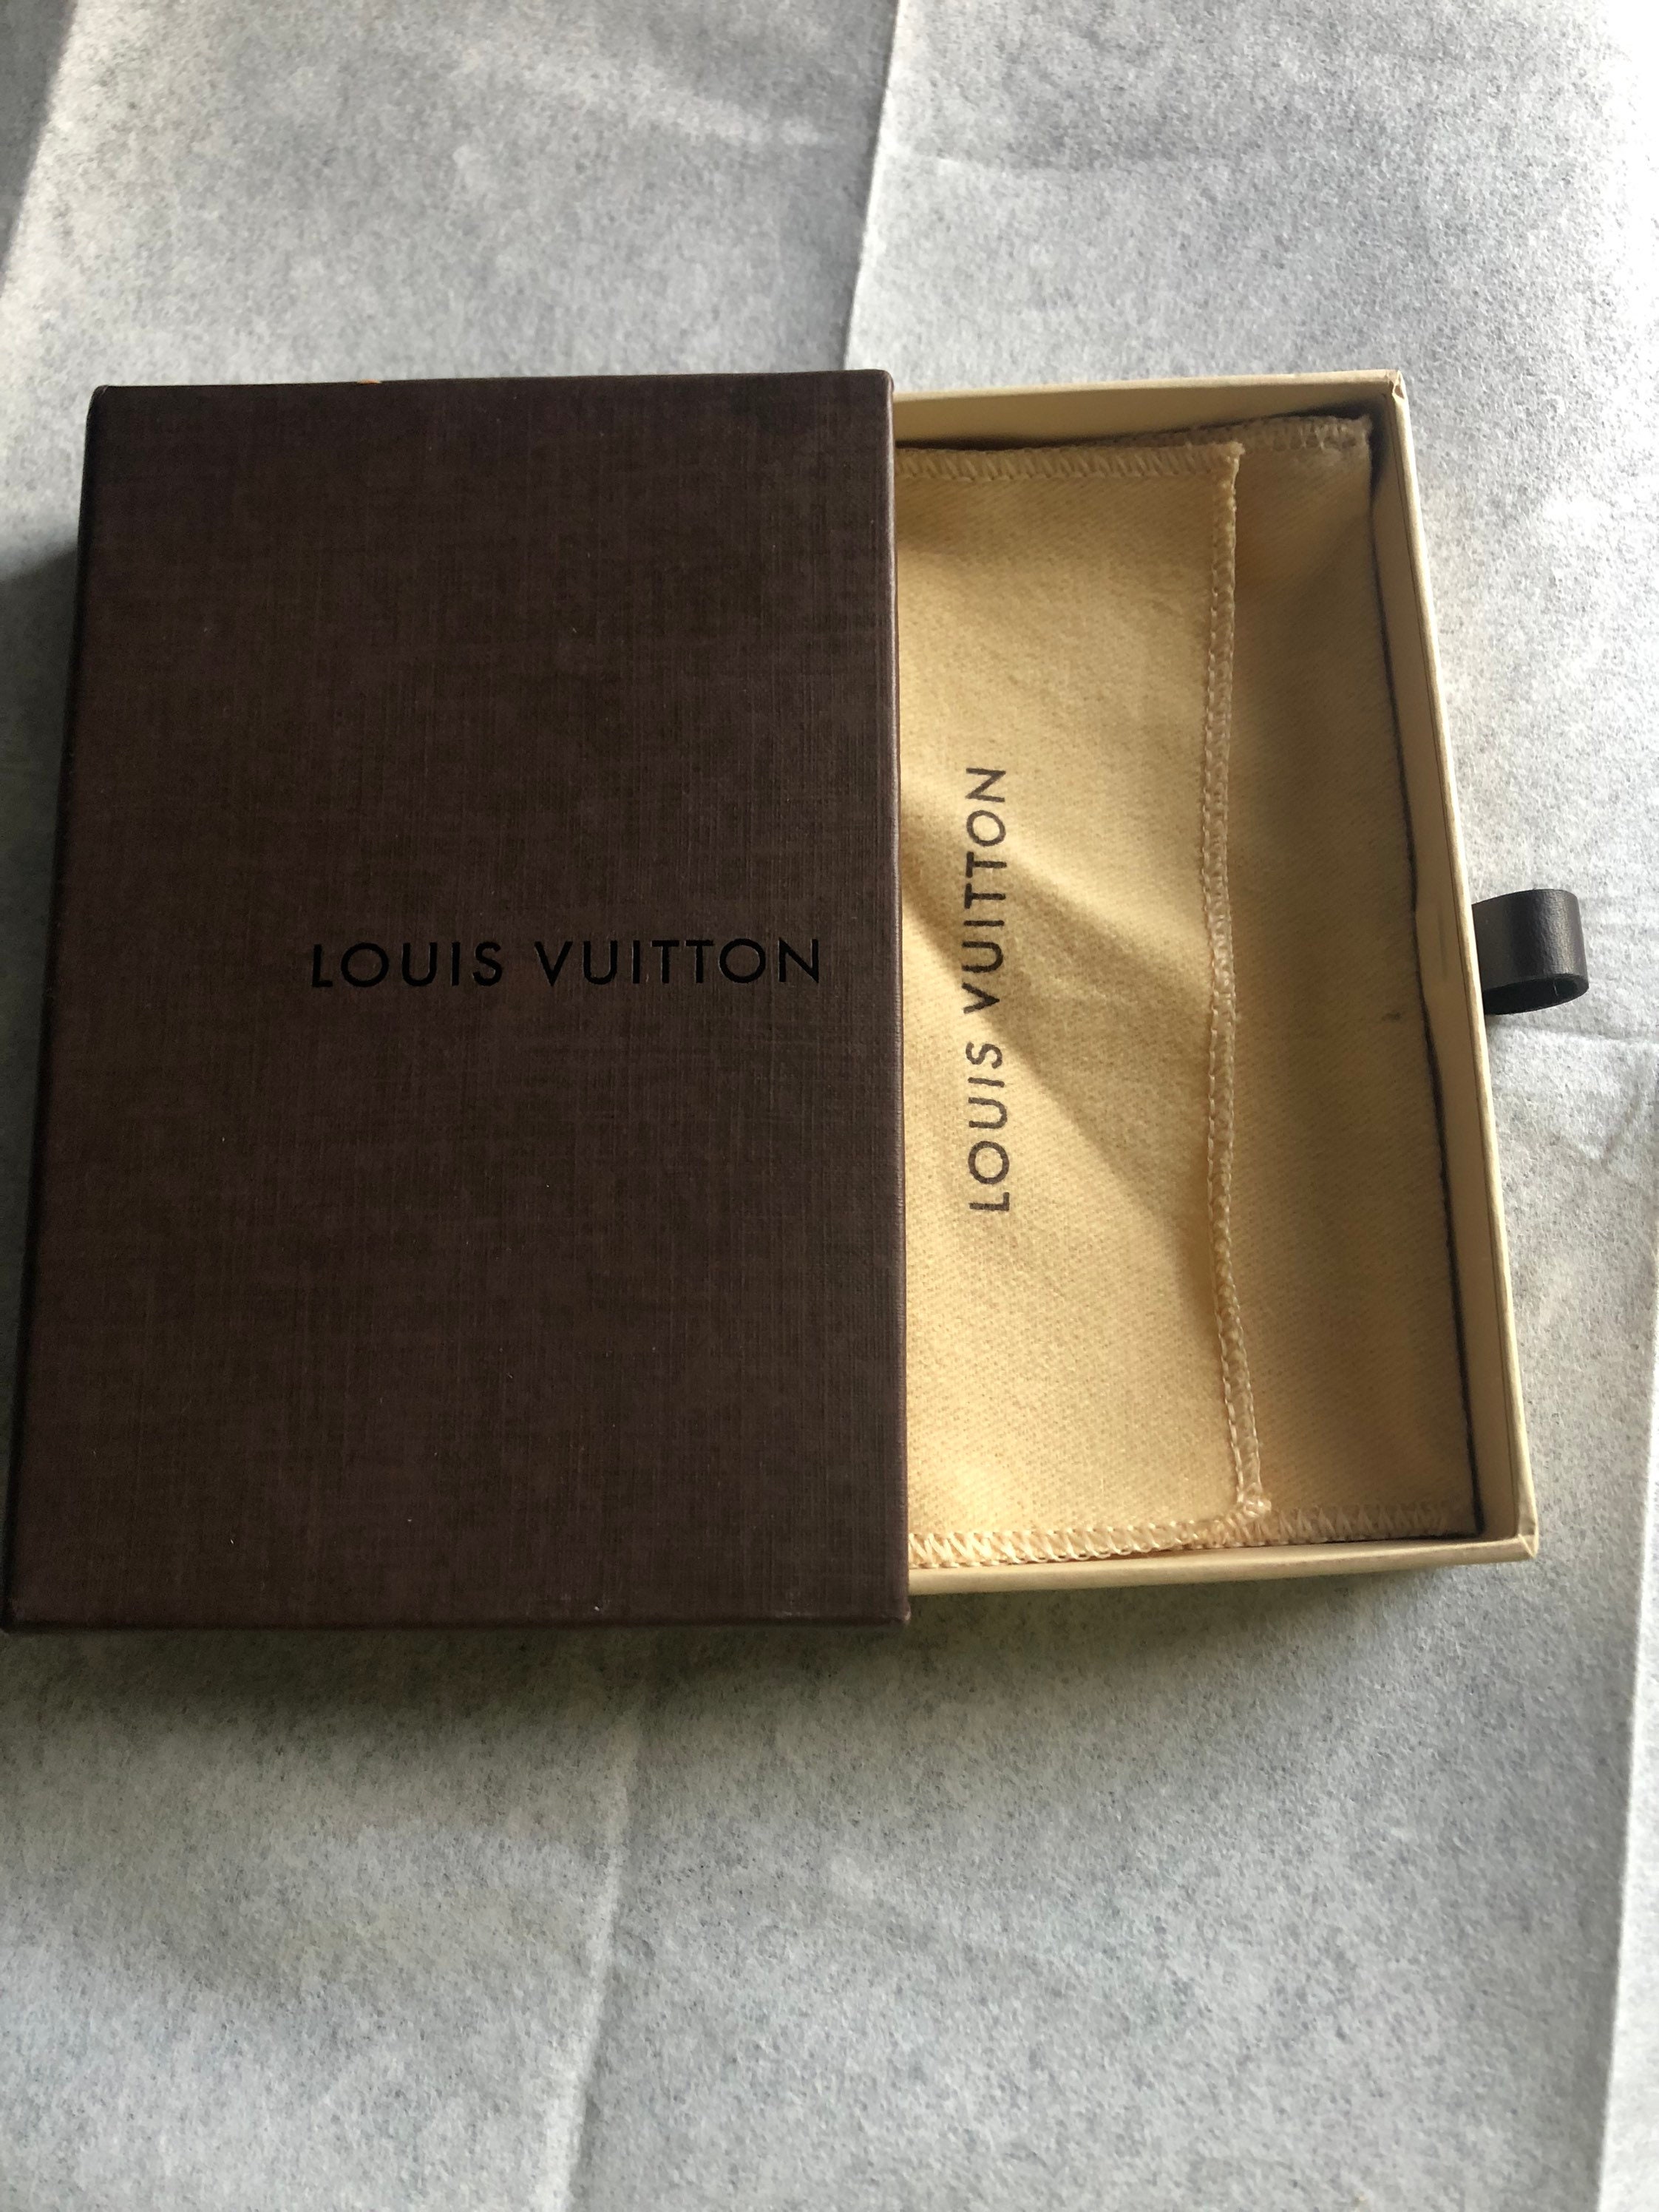 Authentic Louis Vuitton Sliding Empty Box and Louis Vuitton 